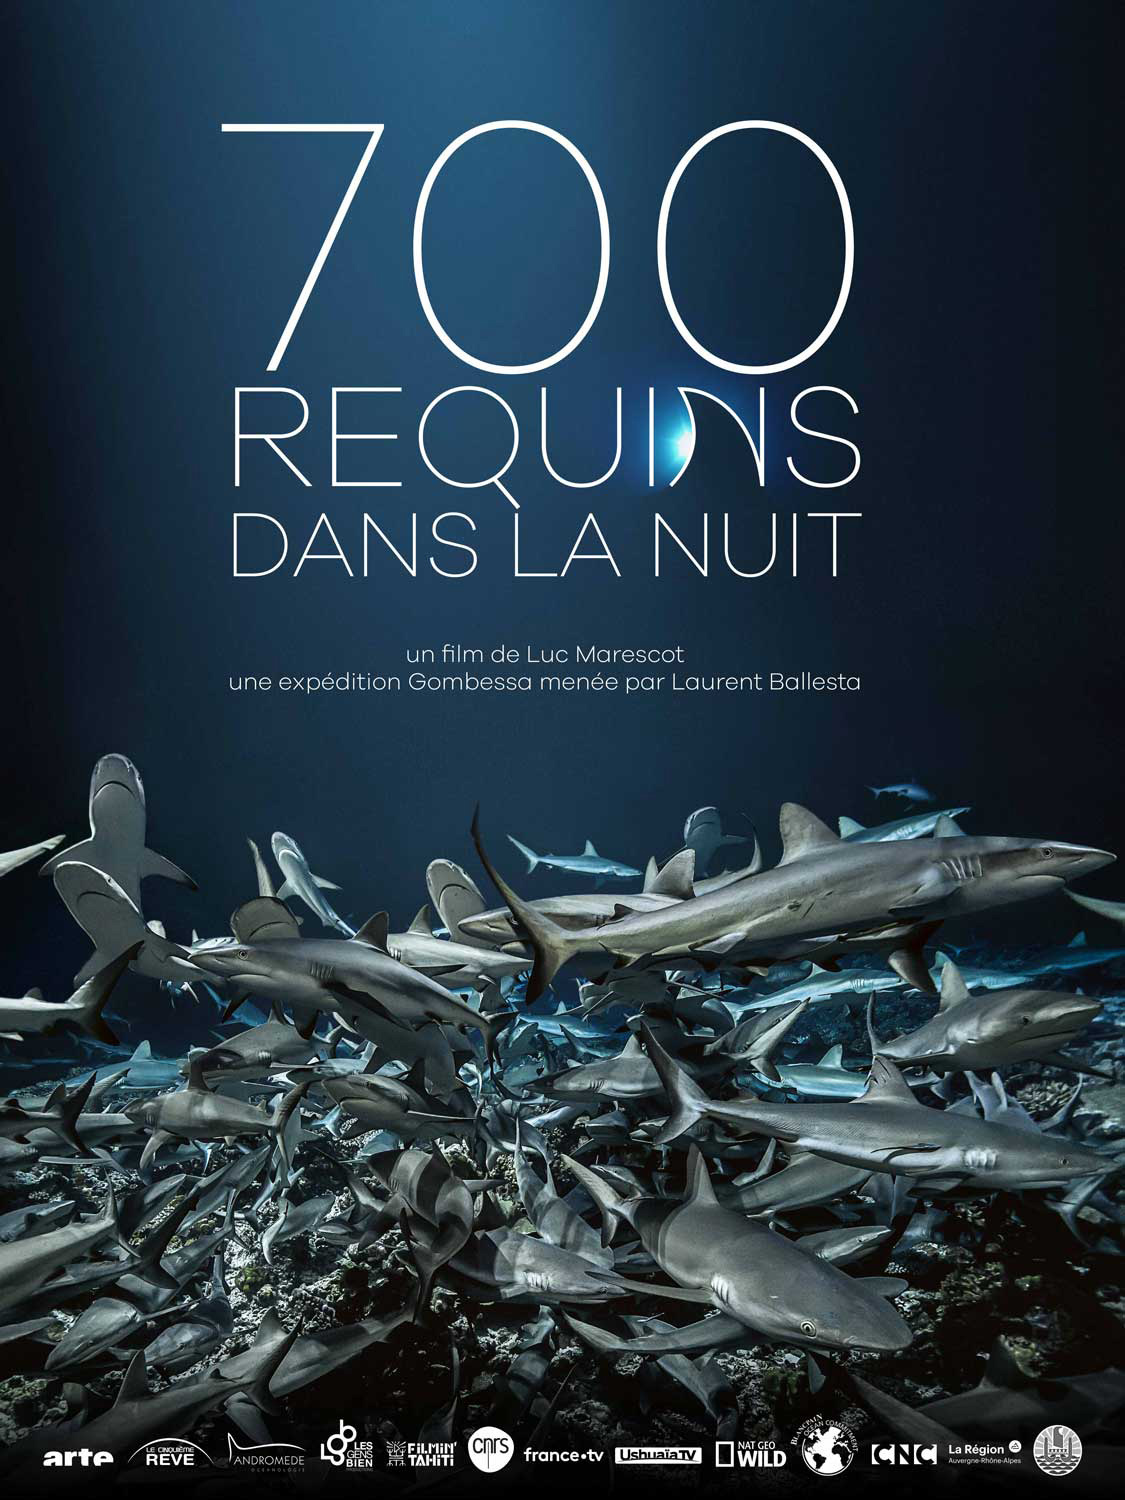 700 requins dans la nuit_Cristal-Publishing